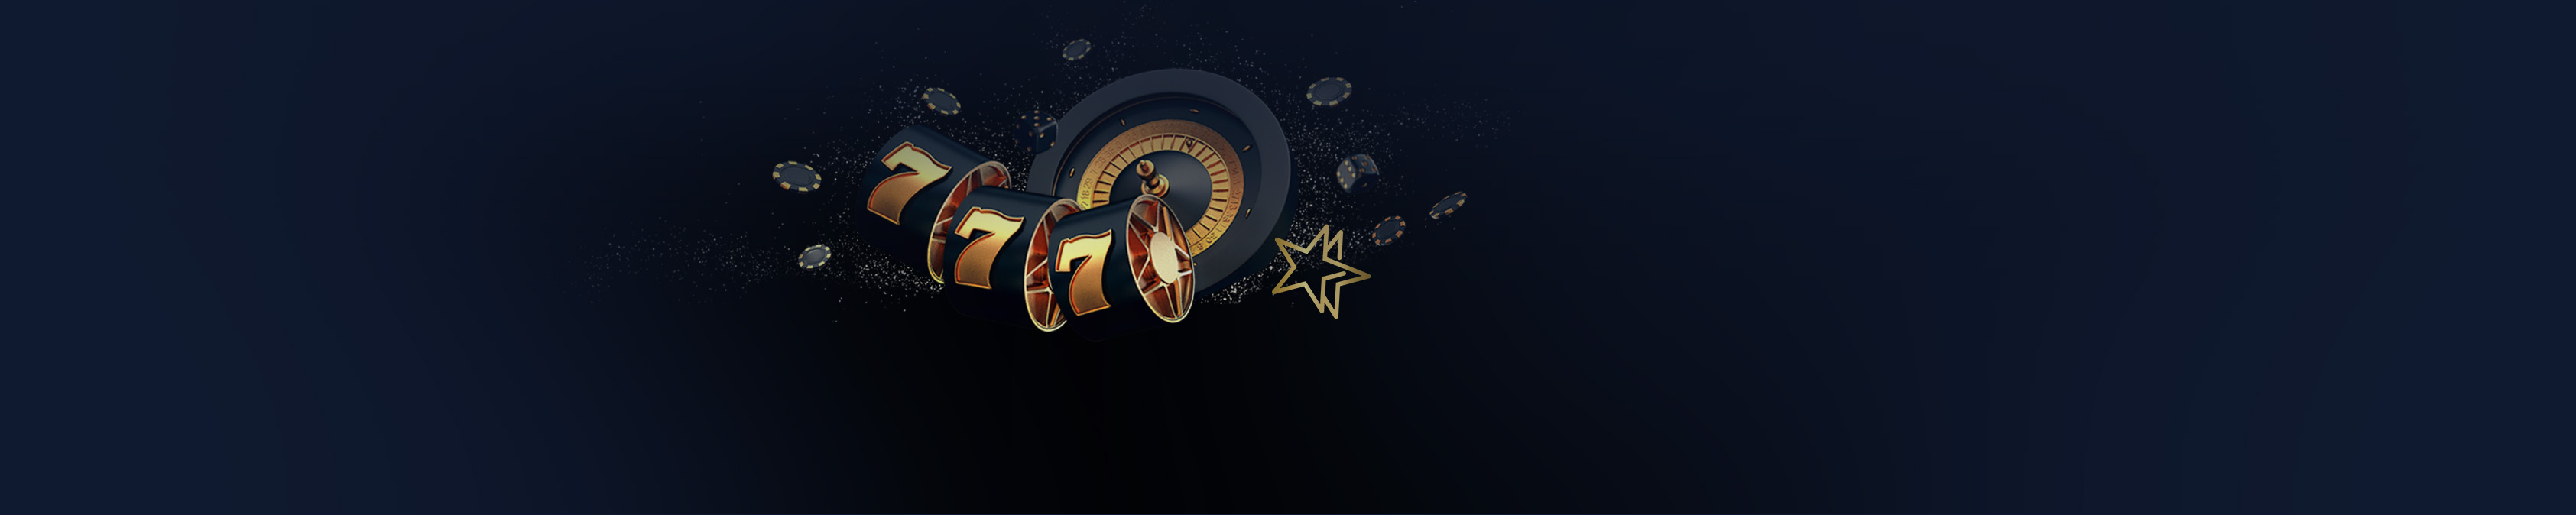 casinosearch.sk DoubleStar rozšírilo vstupný bonus o free spiny